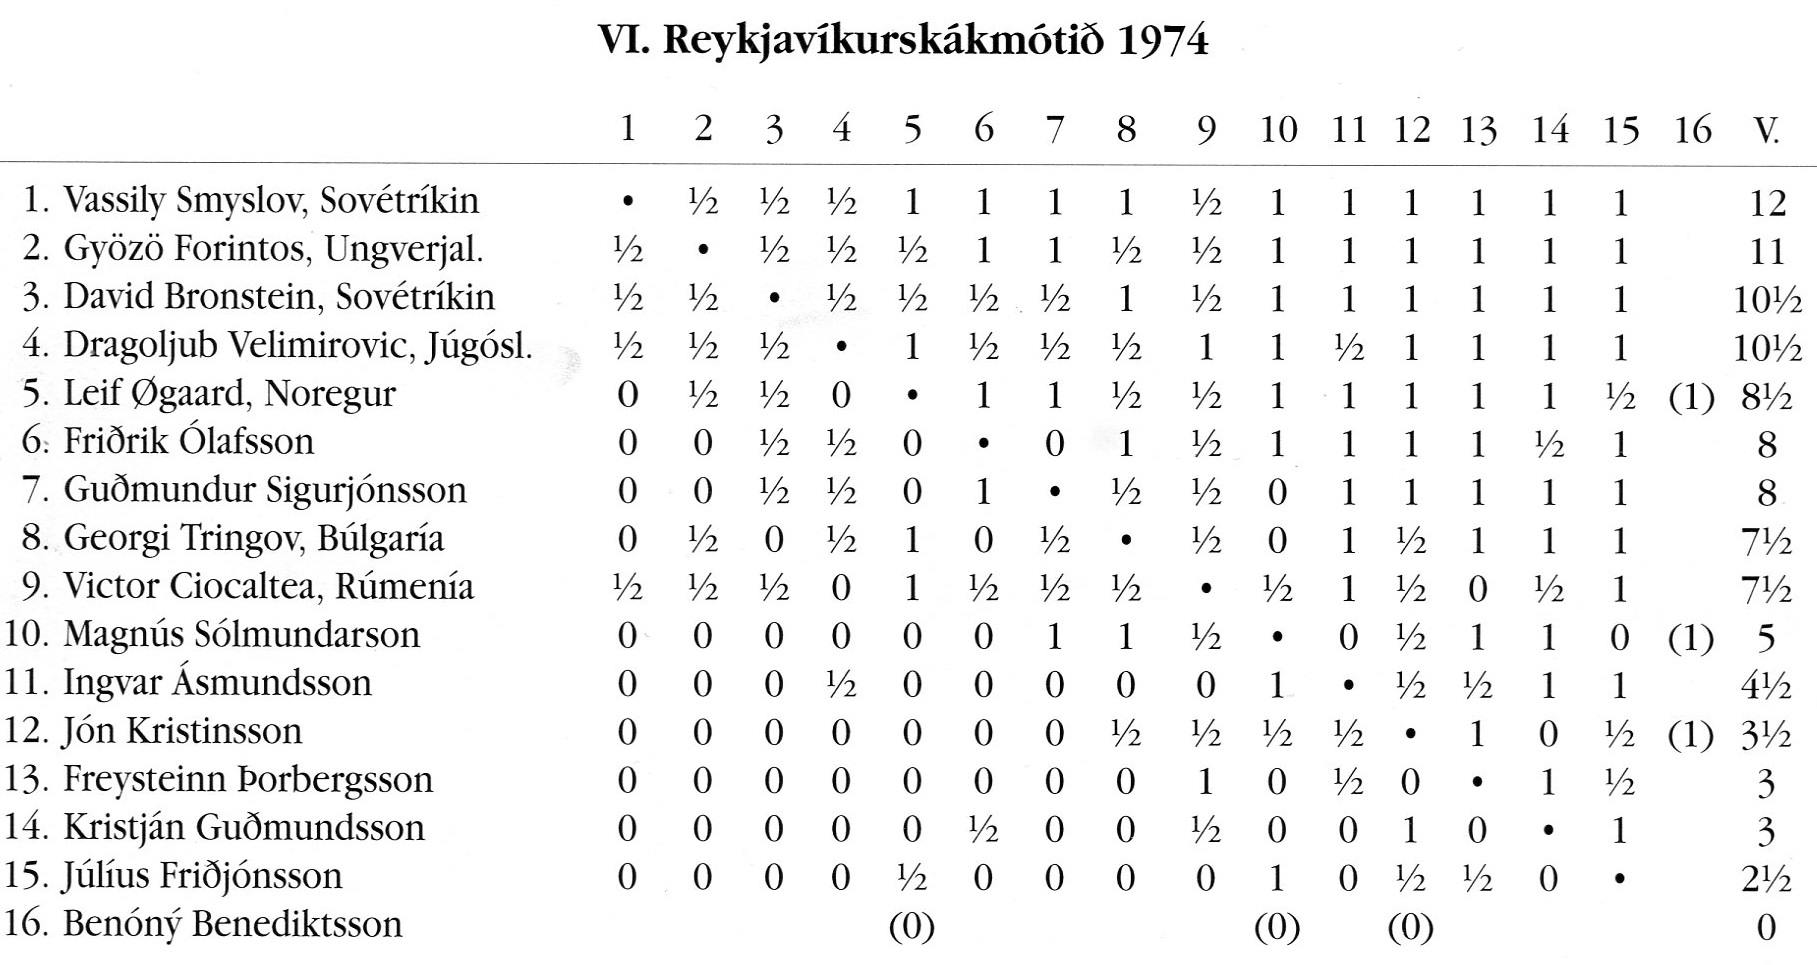 1974 Reykjavíkurskakmótið - taflaa